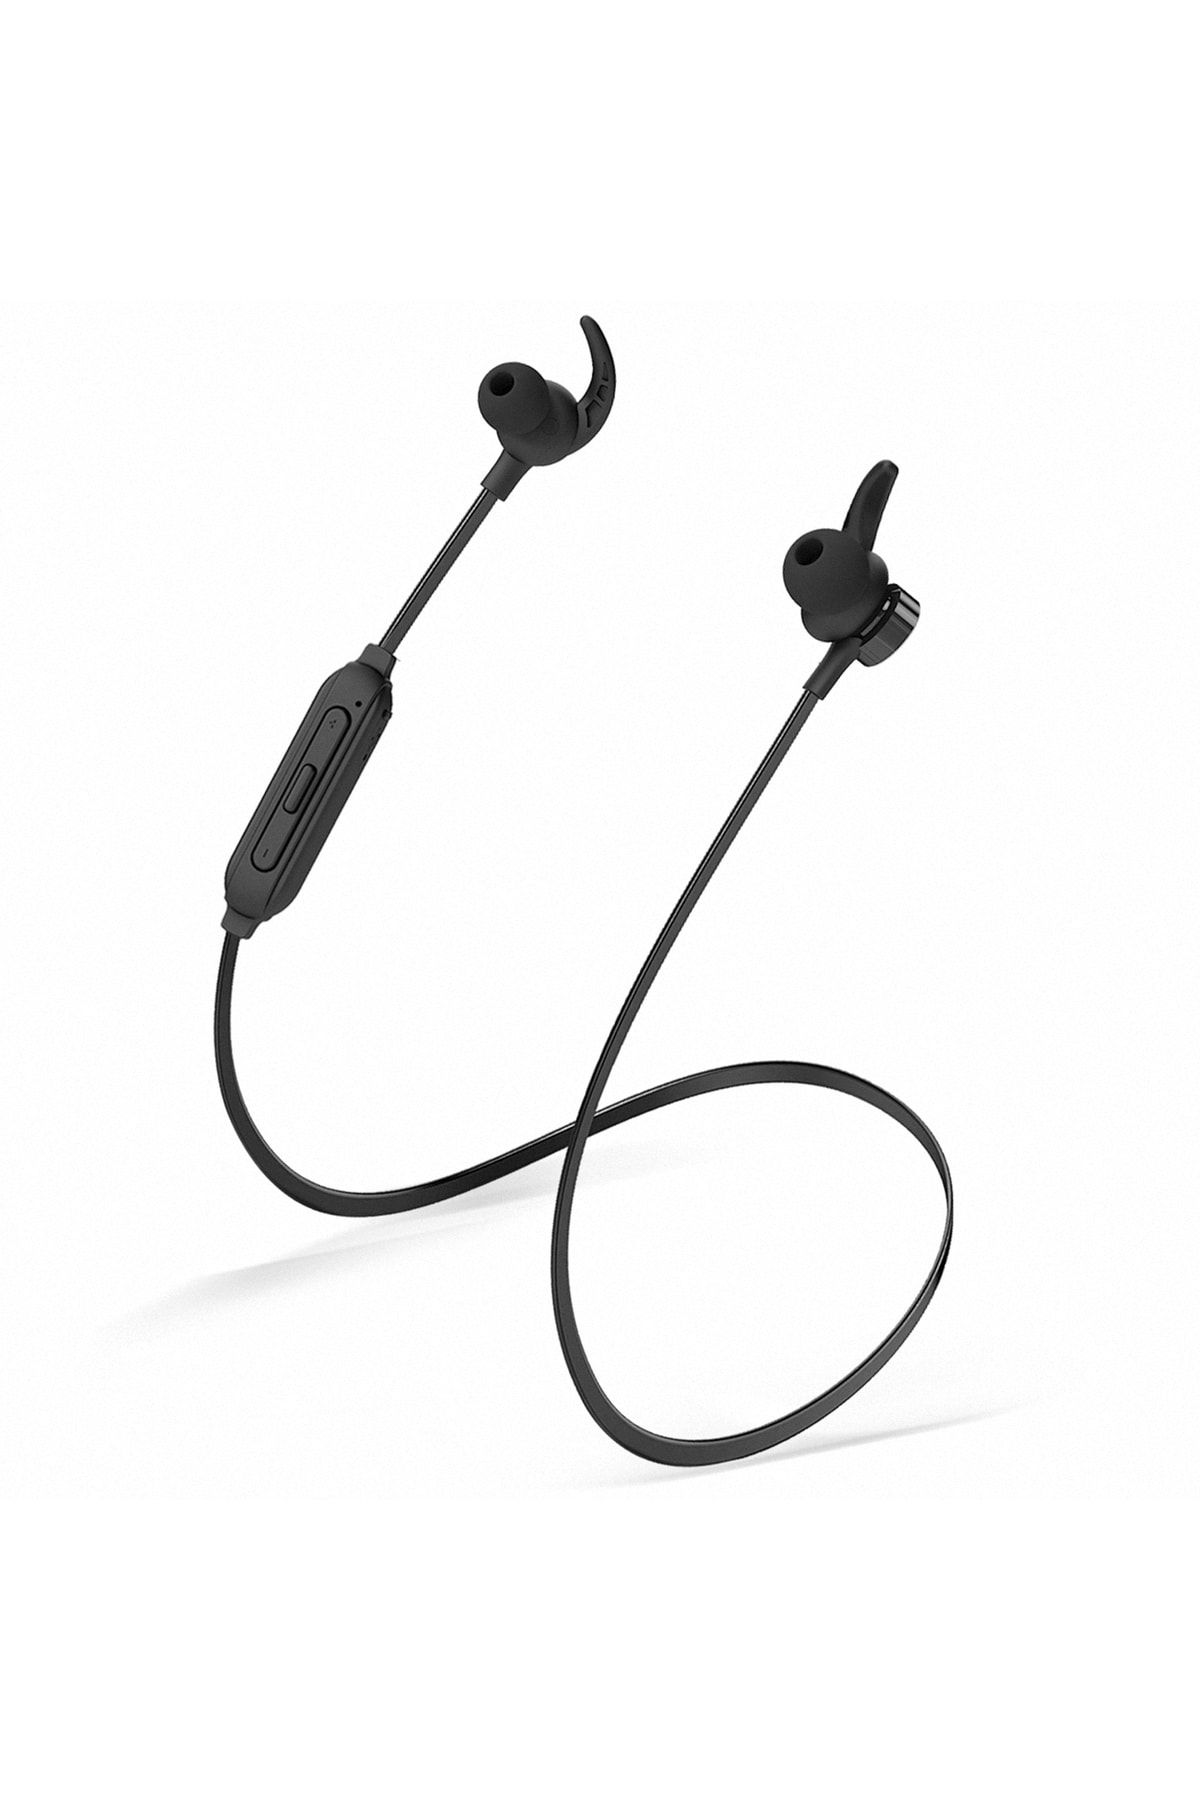 Snopy Sn-xbk05 Boyun Askılı Mıknatıslı Bluetooth Spor Kulak Içi Siyah Kulaklık - Mikrofon